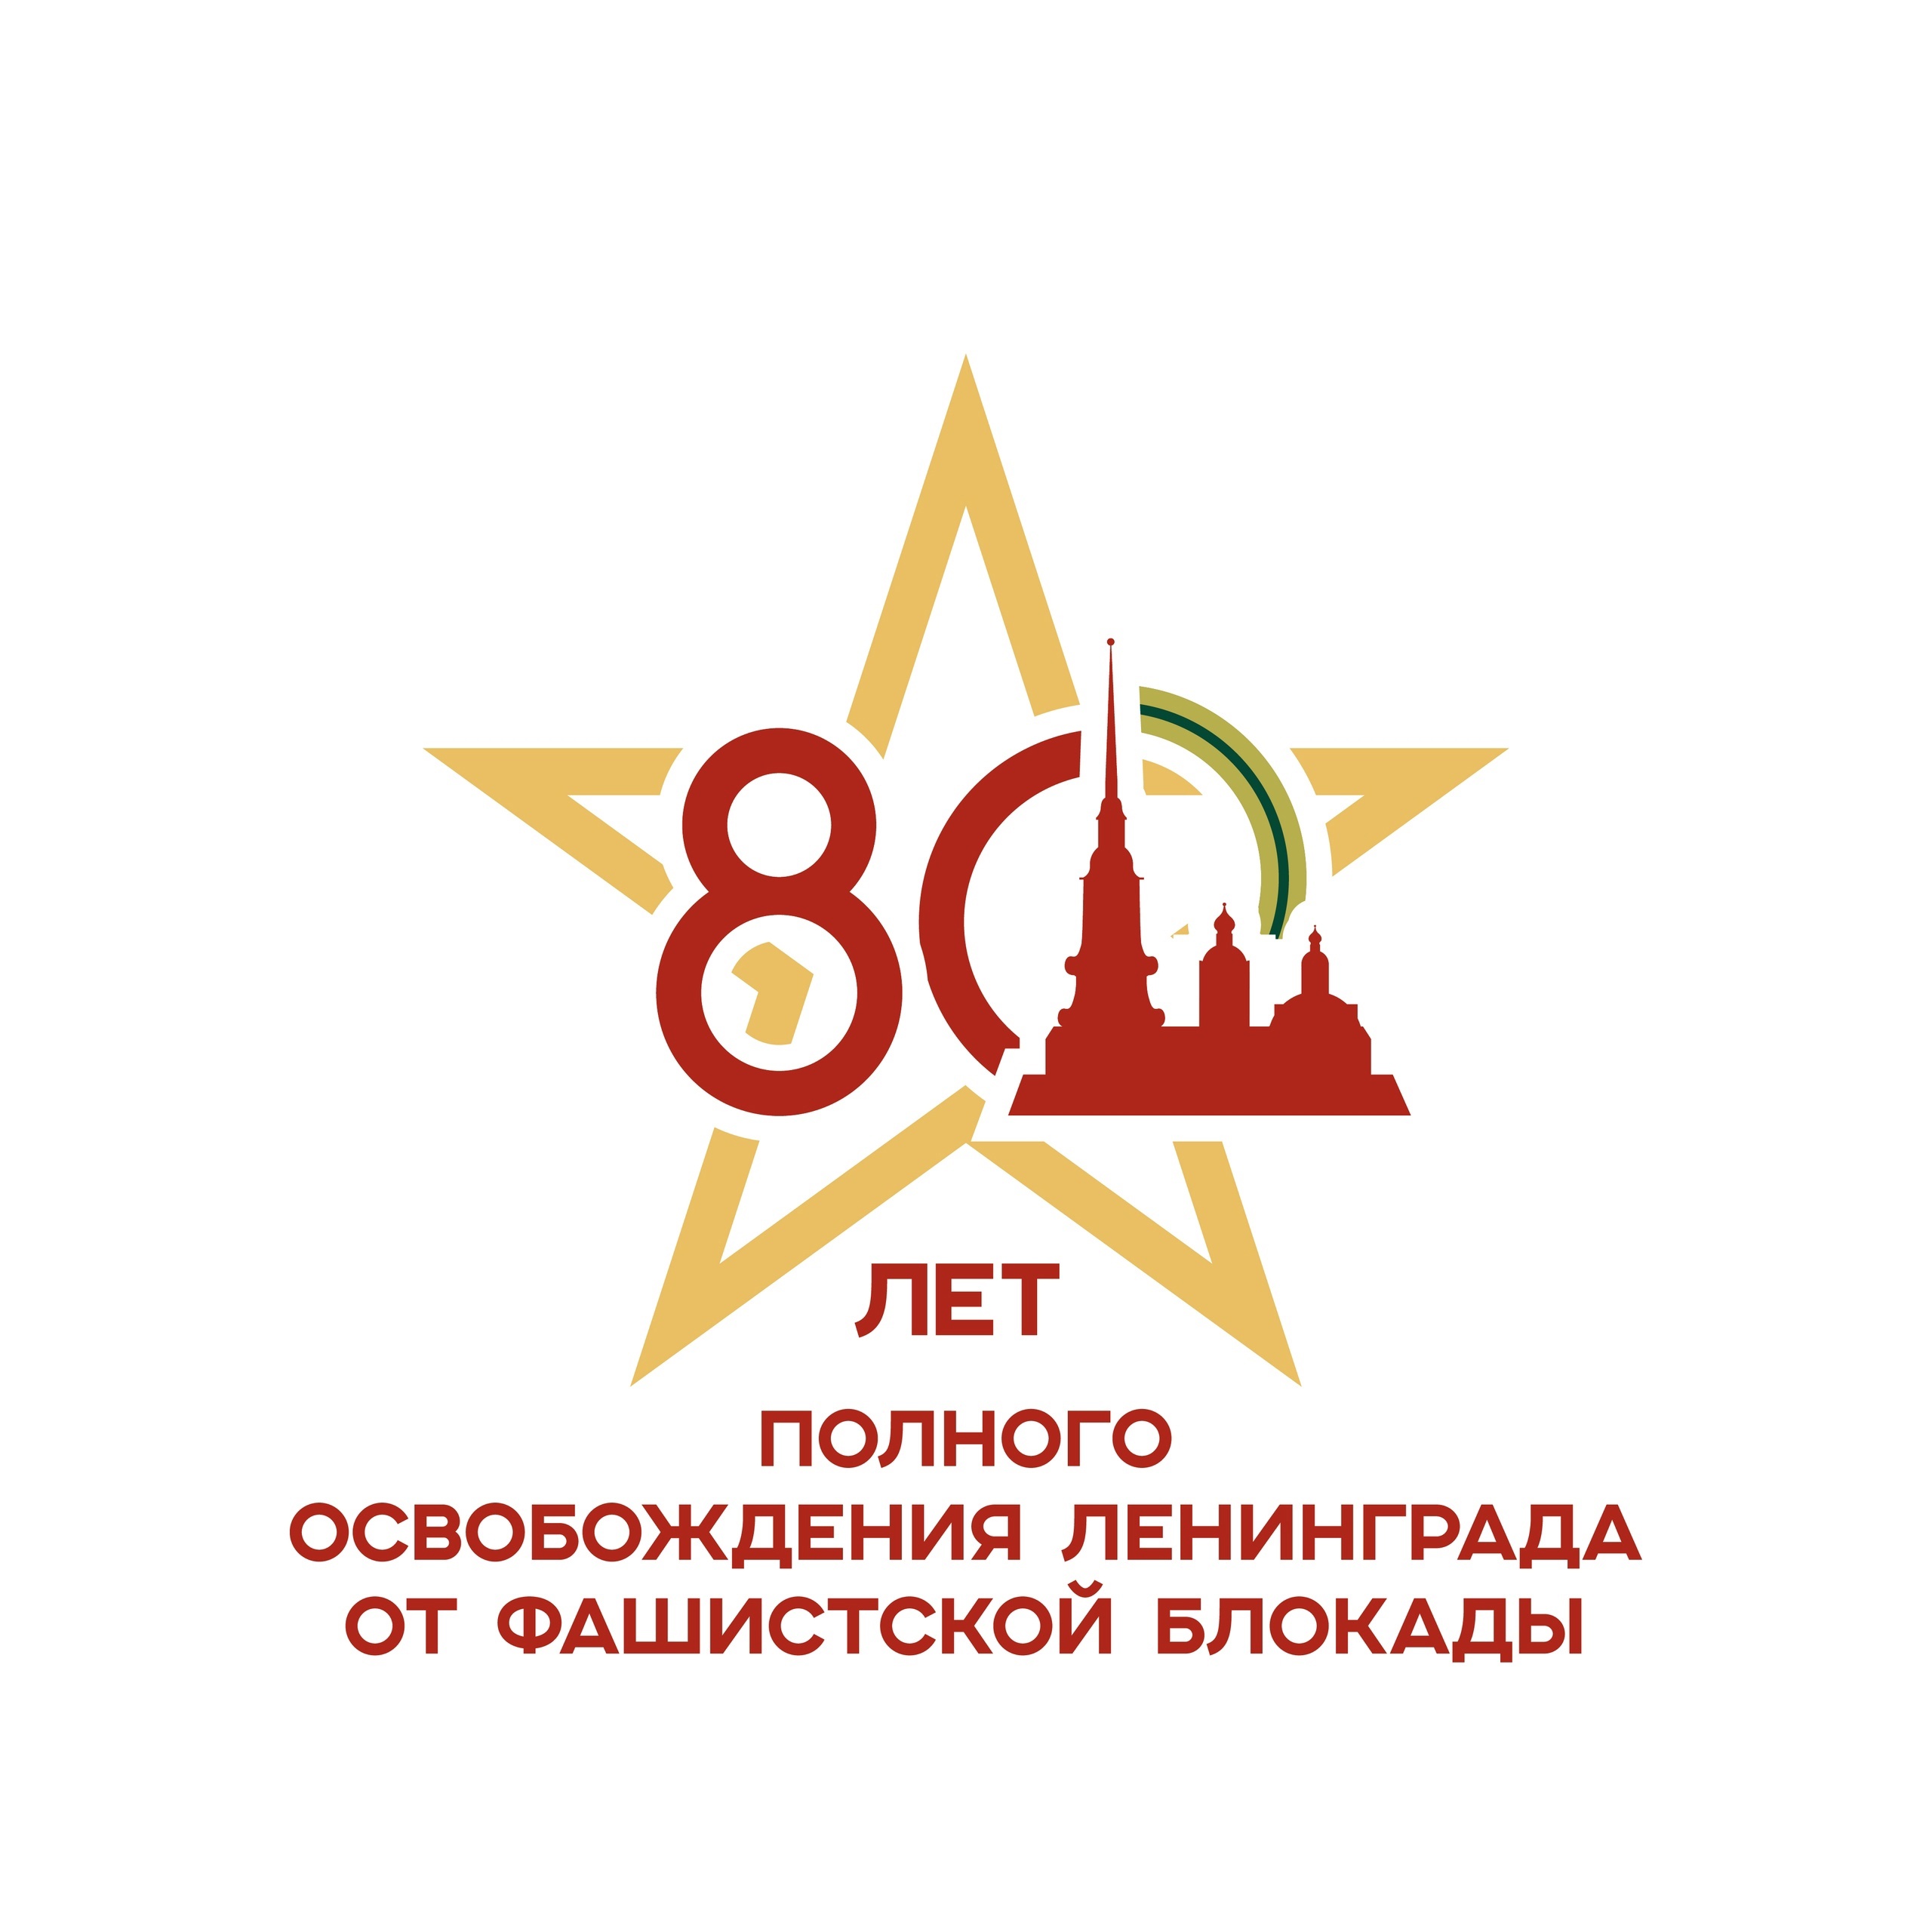 27 января 1944 года, 80 лет назад, Ленинград был полностью освобожден от фашистской блокады